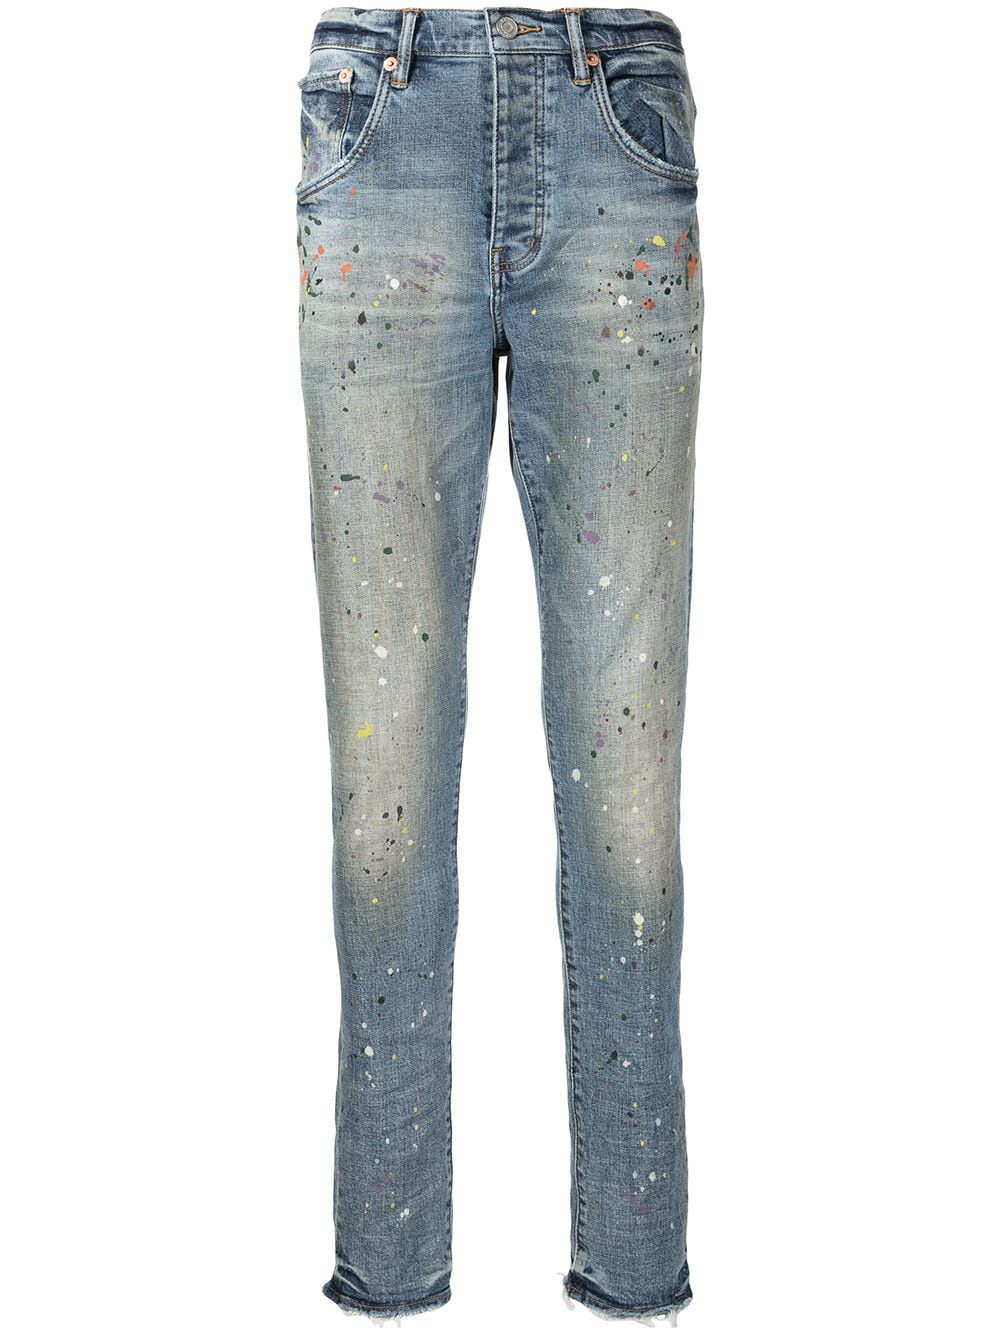 фото Purple brand узкие джинсы с эффектом разбрызганной краски